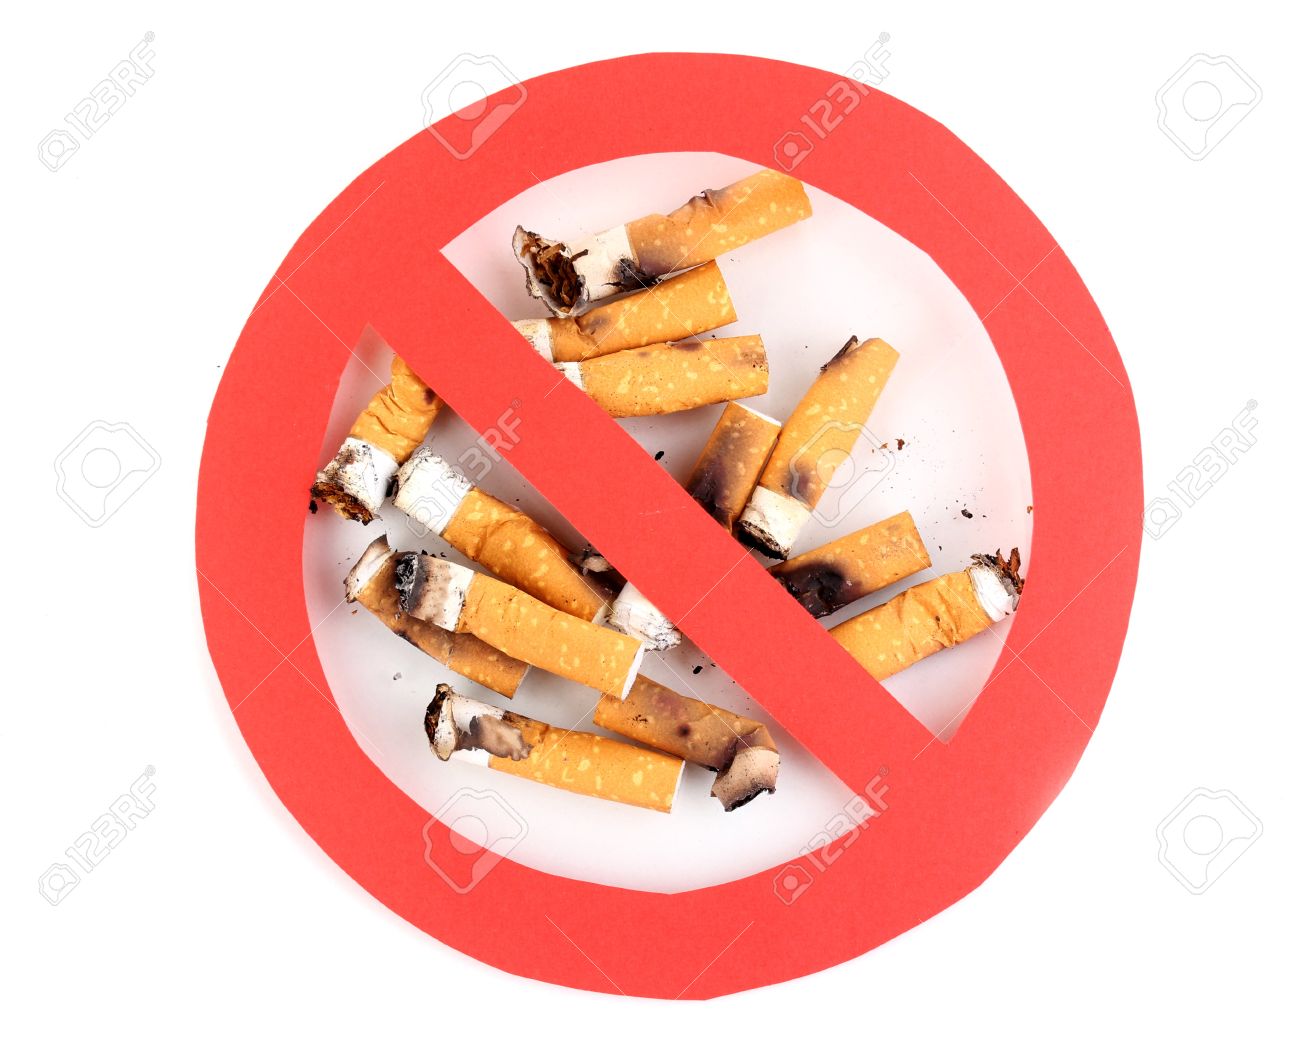 Simbolo di divieto con mozziconi di sigarette